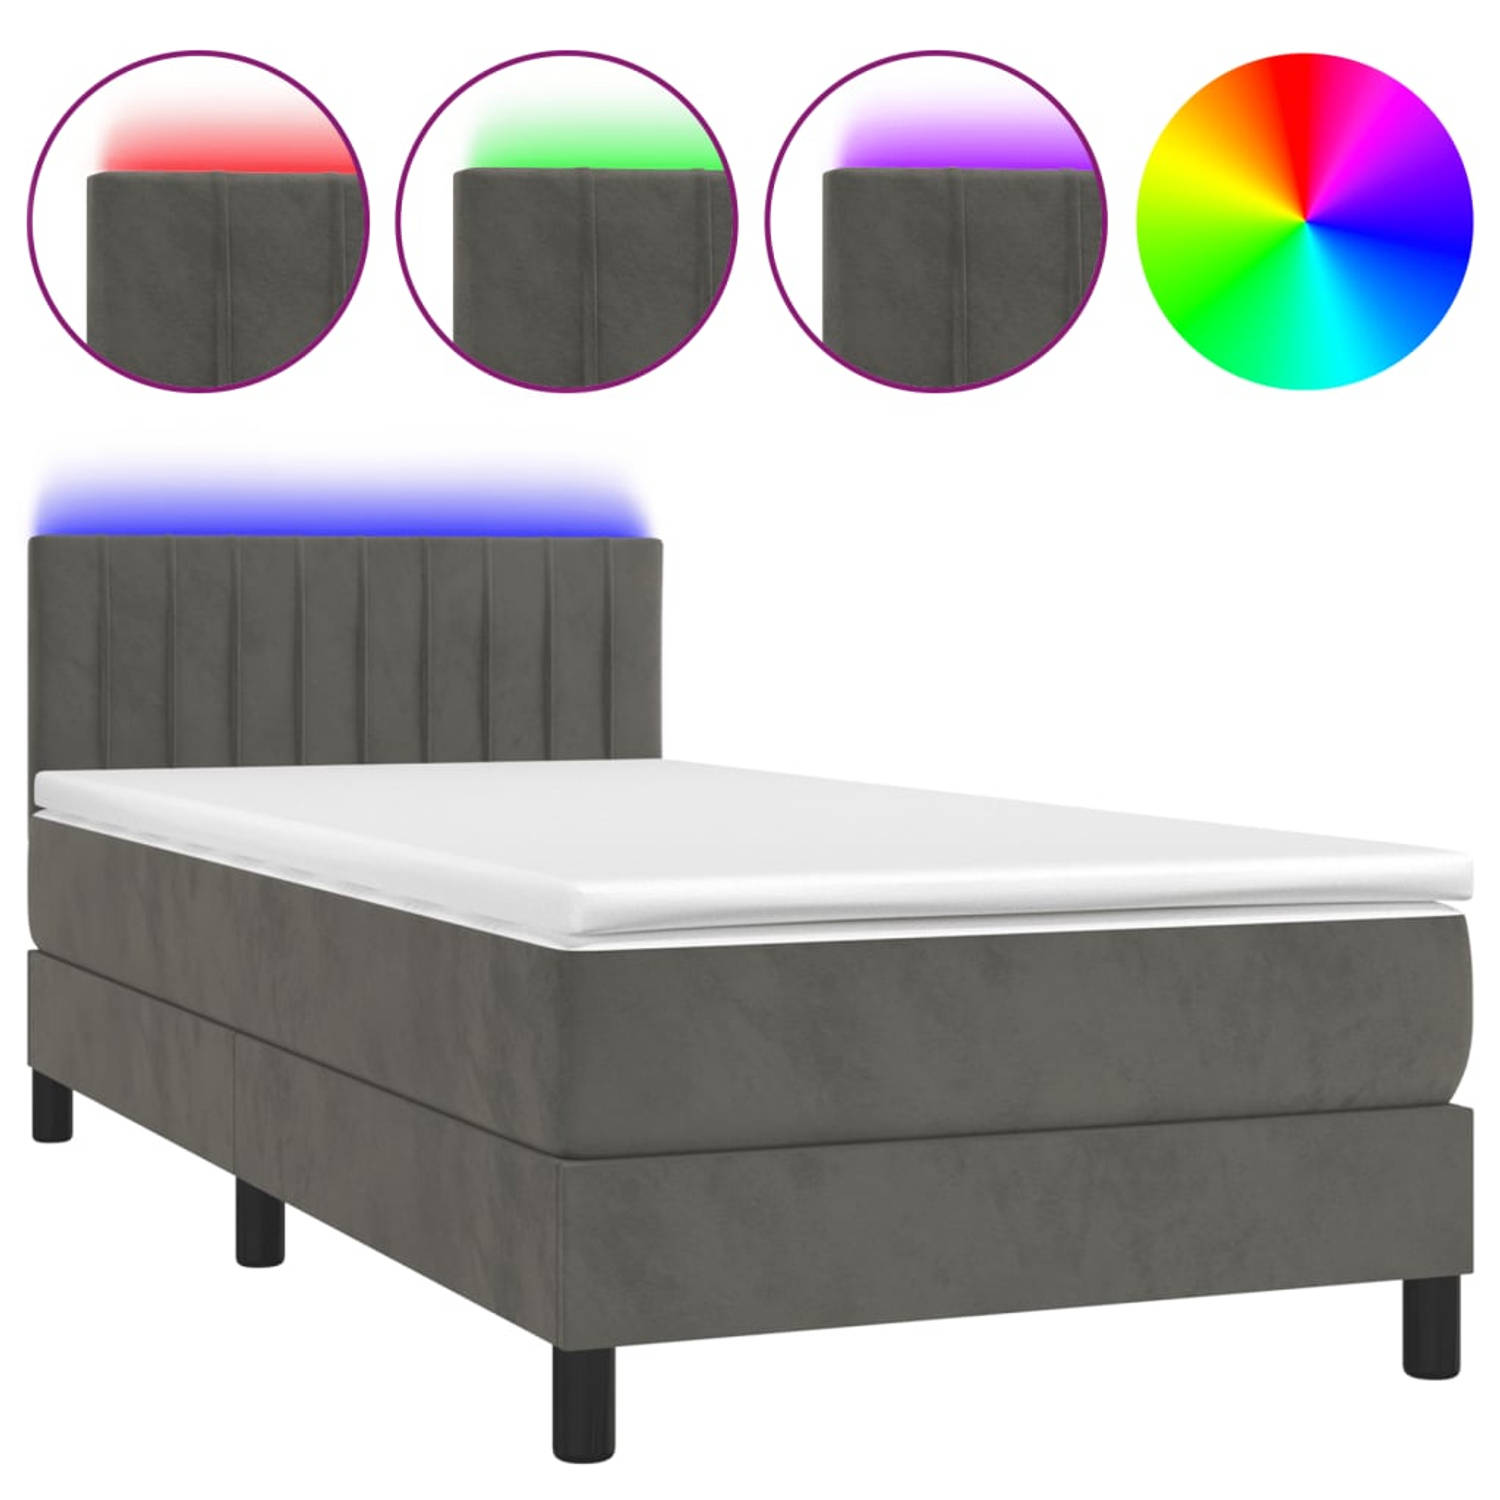 The Living Store Bed Donkergrijs Fluweel - Pocketvering Matras - Huidvriendelijk Topmatras - Kleurrijke LED